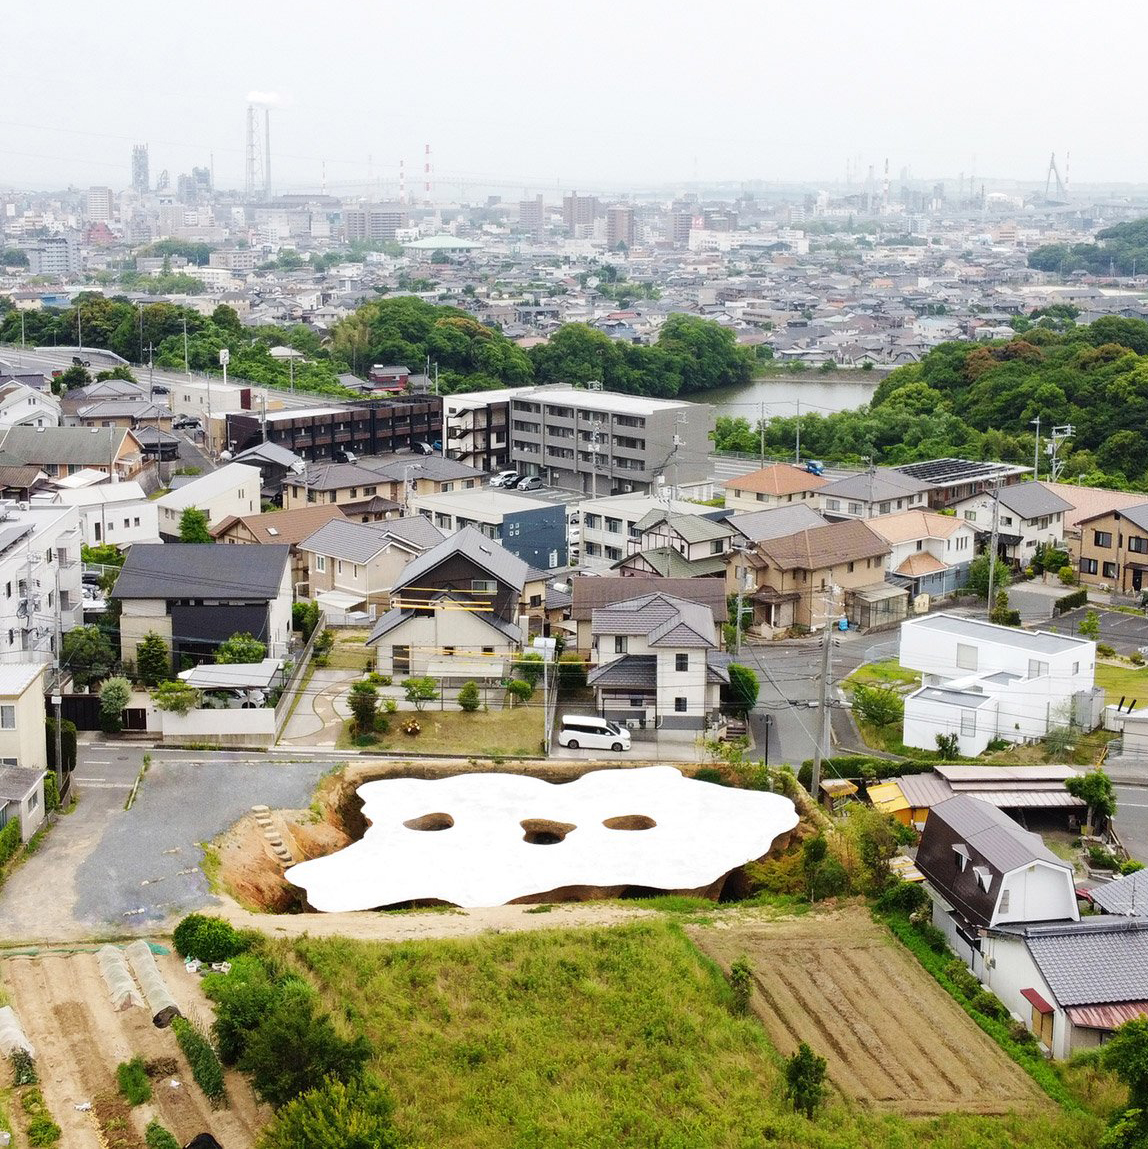 Underground house and restaurant designed by architect Junya Ishigami